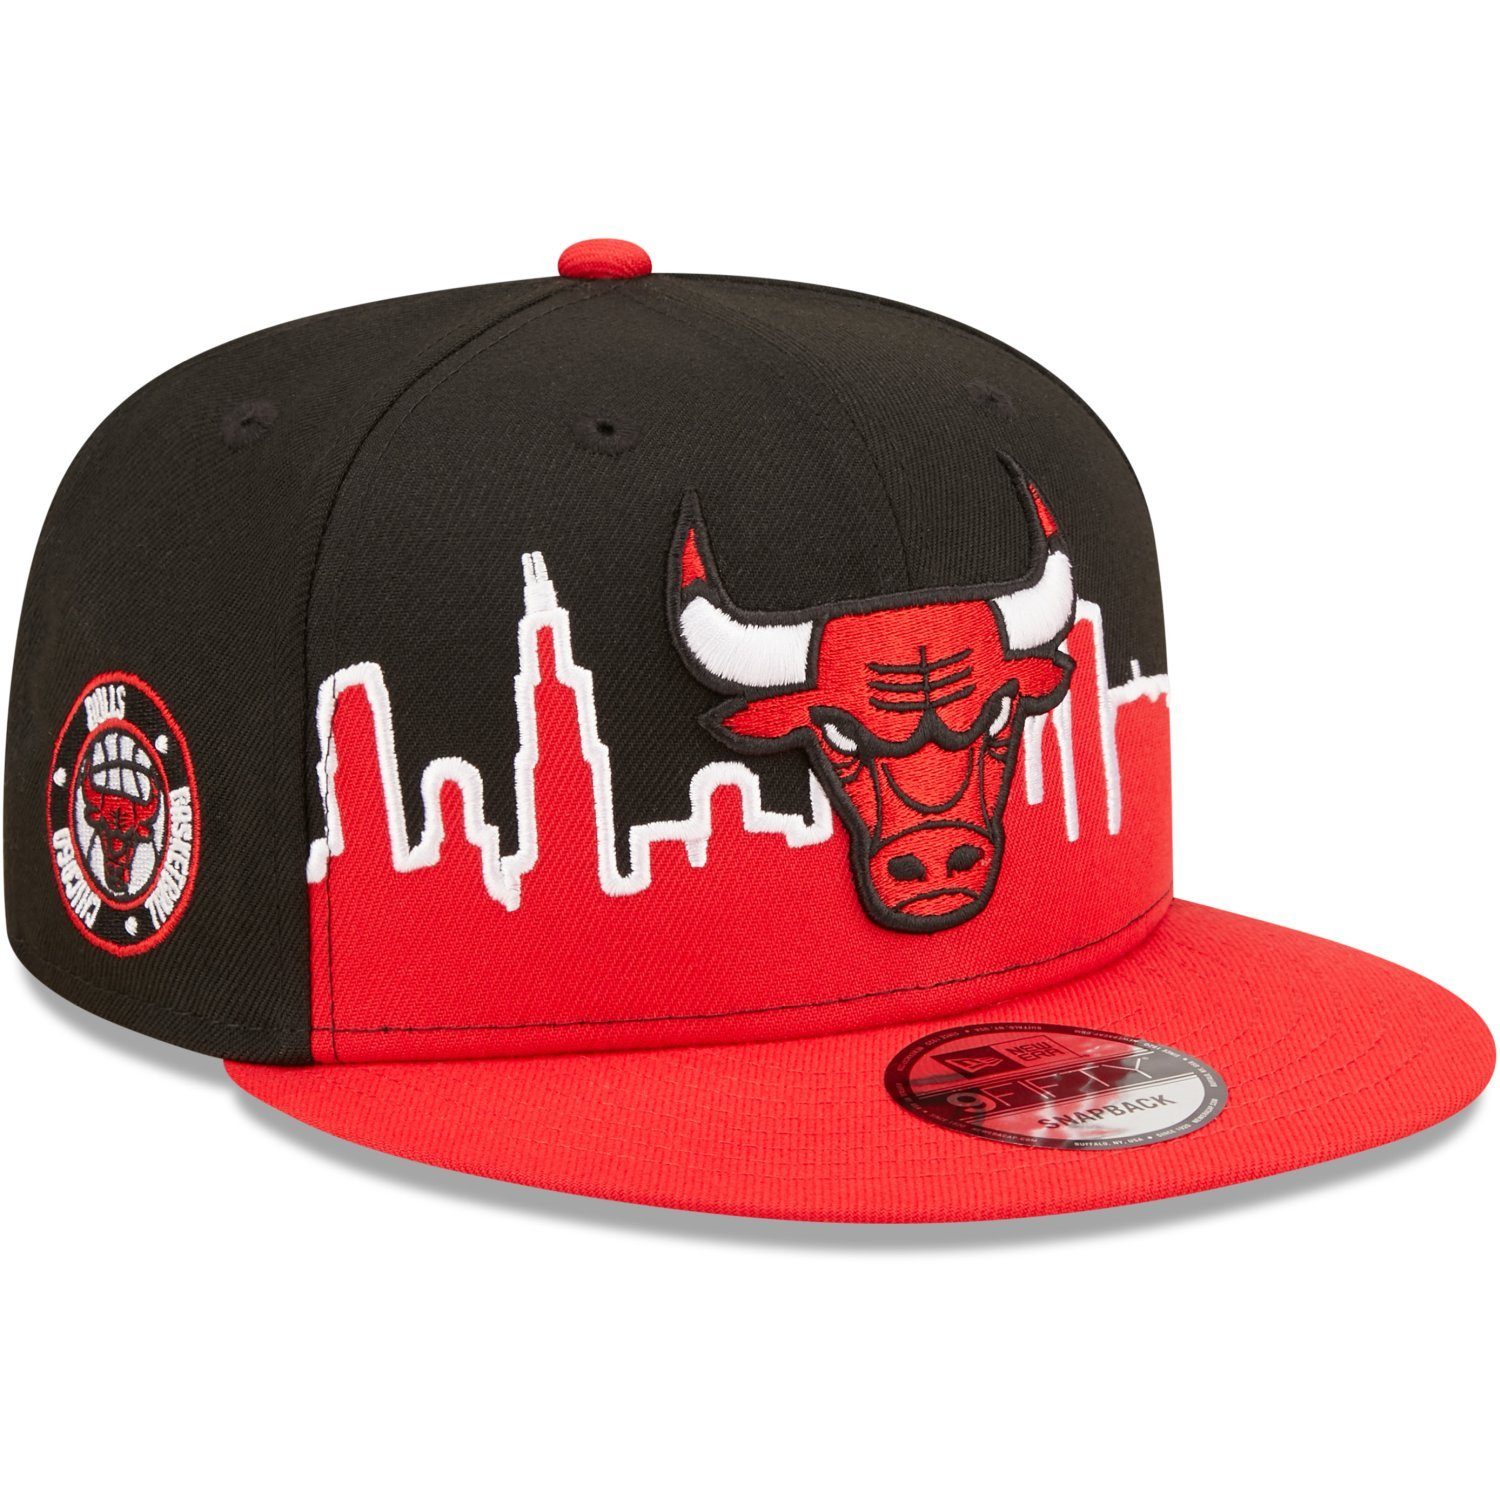 New Era Snapback Chicago 9FIFTY NBA Cap Bulls TIPOFF